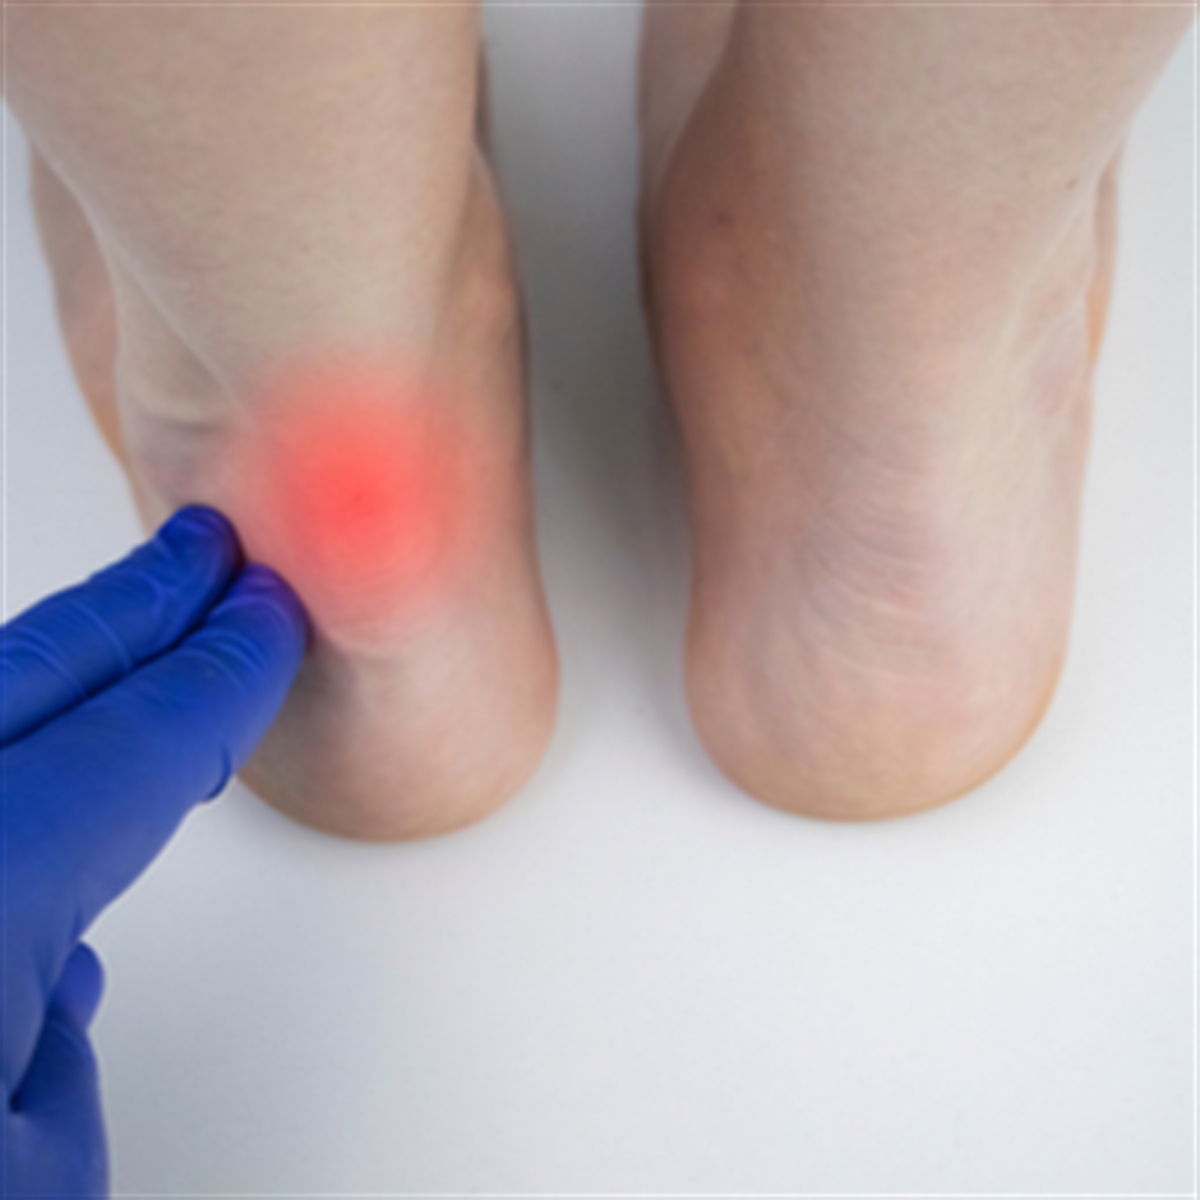 asil tendonu nedir asil tendonu kopmasi ve tedavi yontemleri medicana saglik grubu